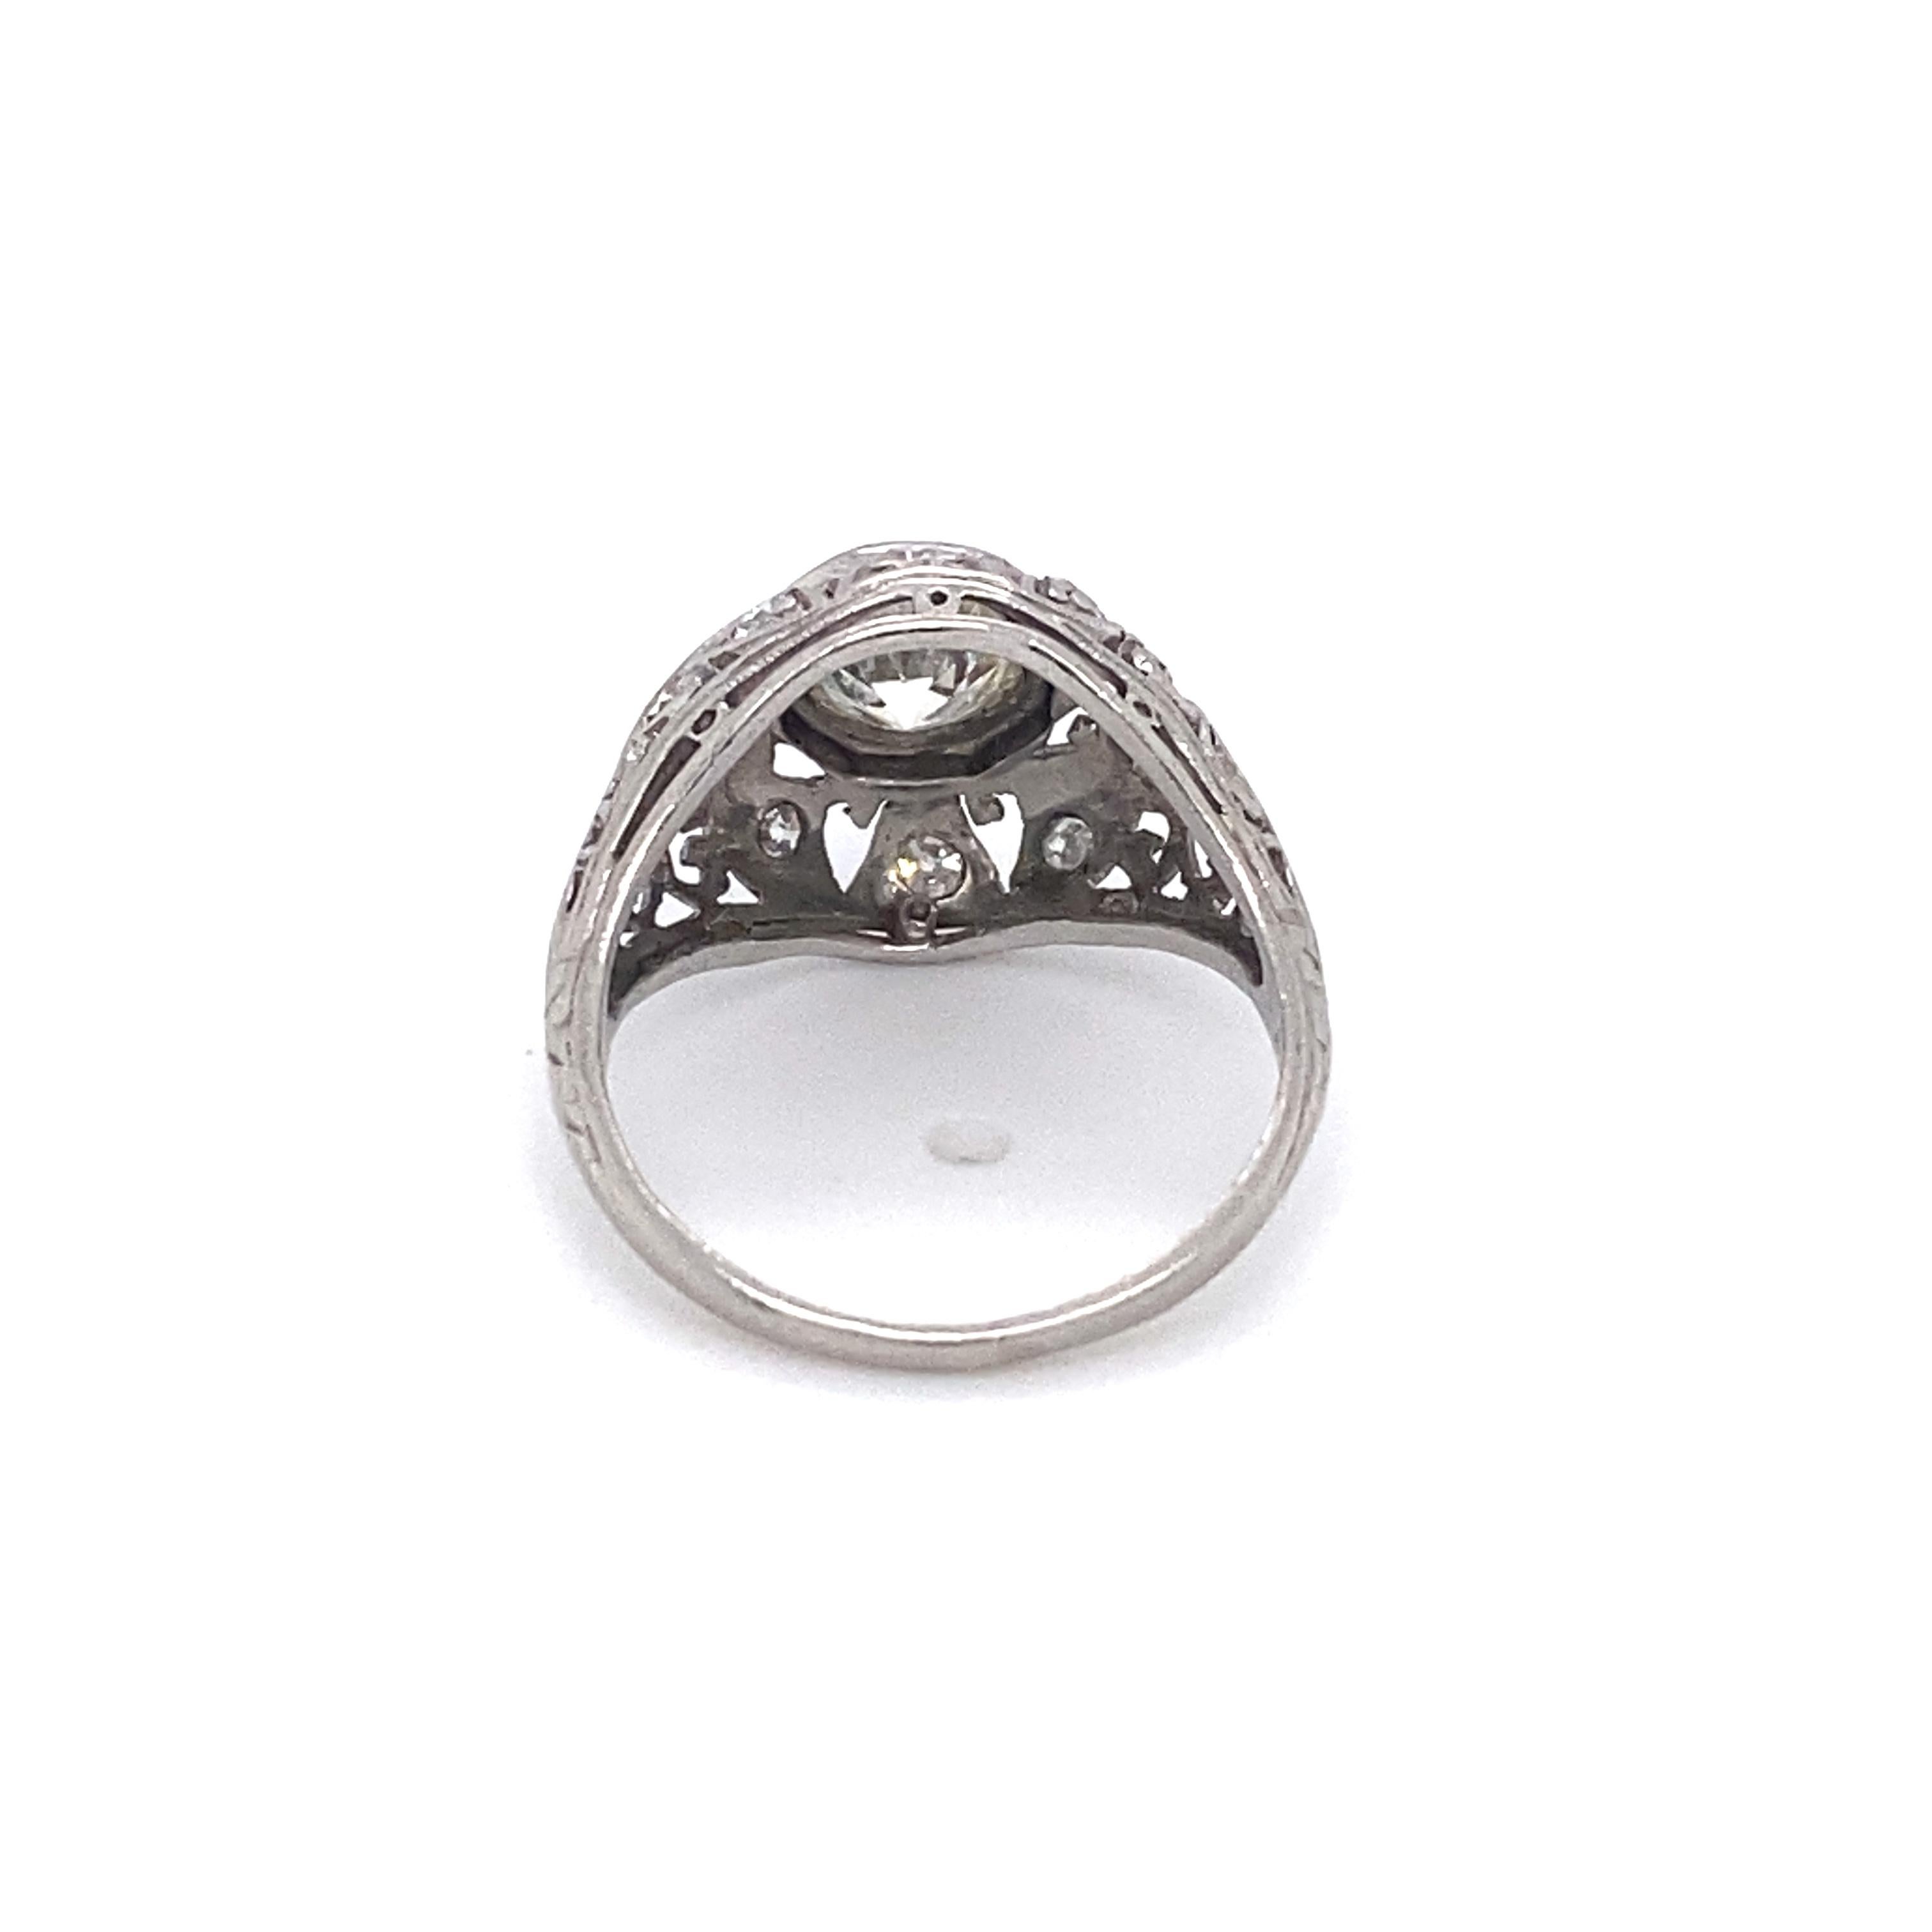 Circa 1920 Art Deco 0.93 Carat Diamond Ring, Platinum In Excellent Condition For Sale In Atlanta, GA